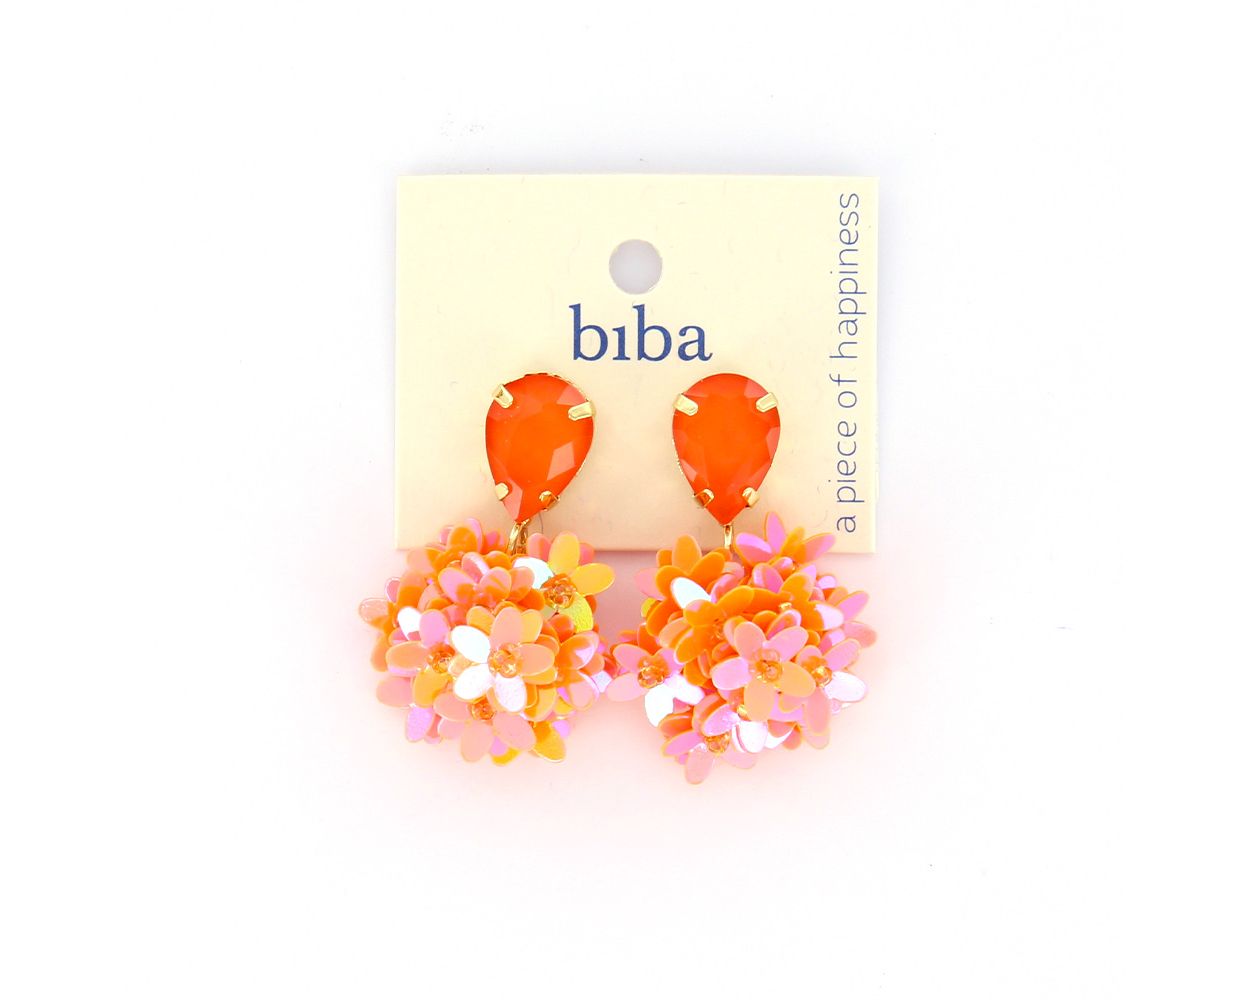 Biba oorbellen Flowers Orange - 83372